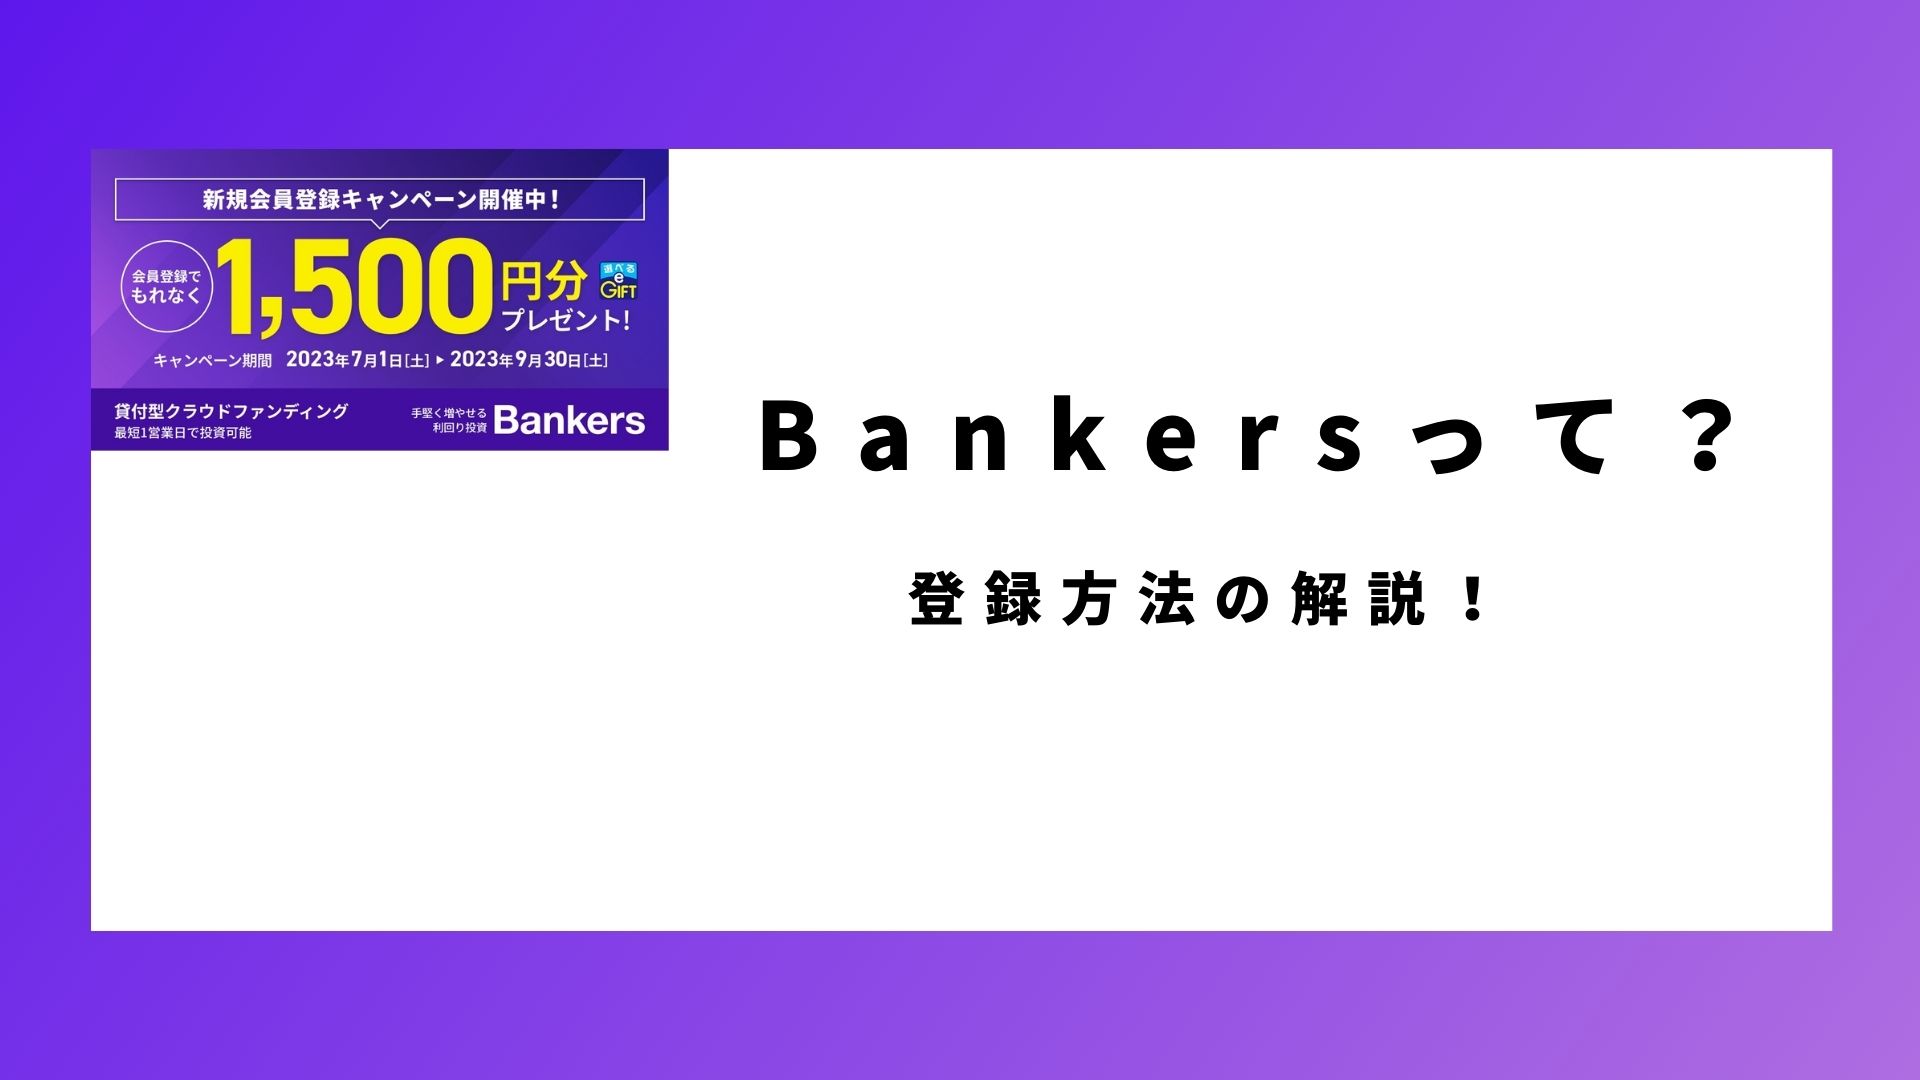 Bankers　登録方法や会社について解説した記事